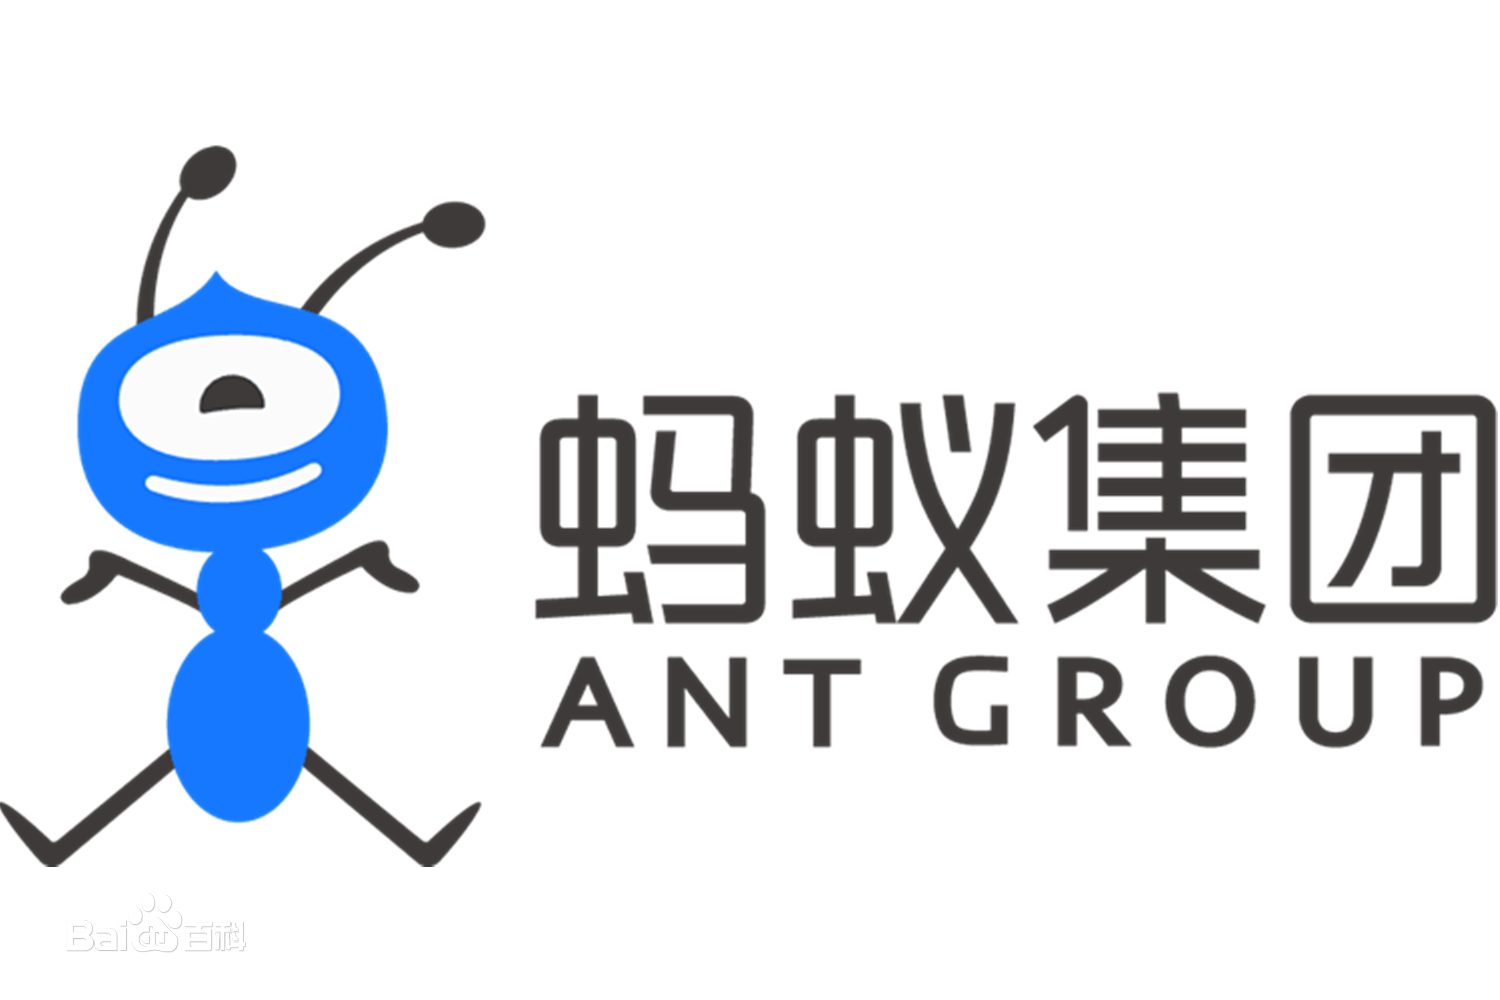 杭州阿里蚂蚁金服会议室 – 声博士